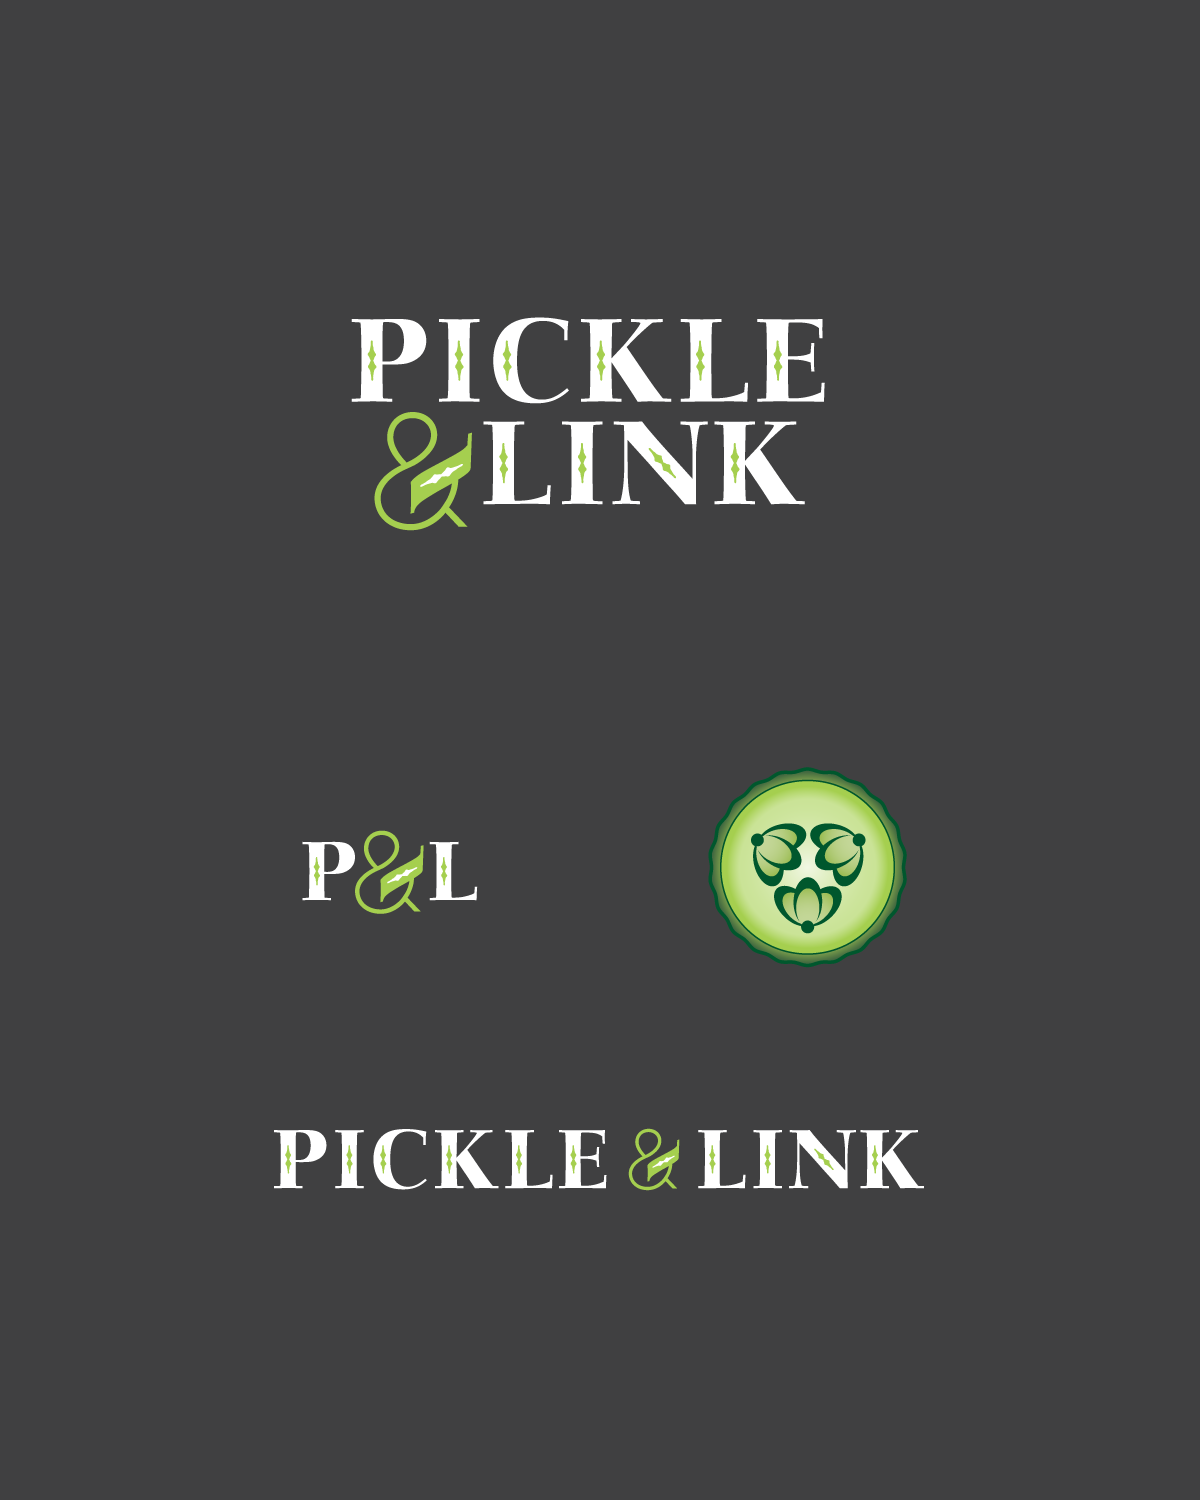 Client: Pickle & Link